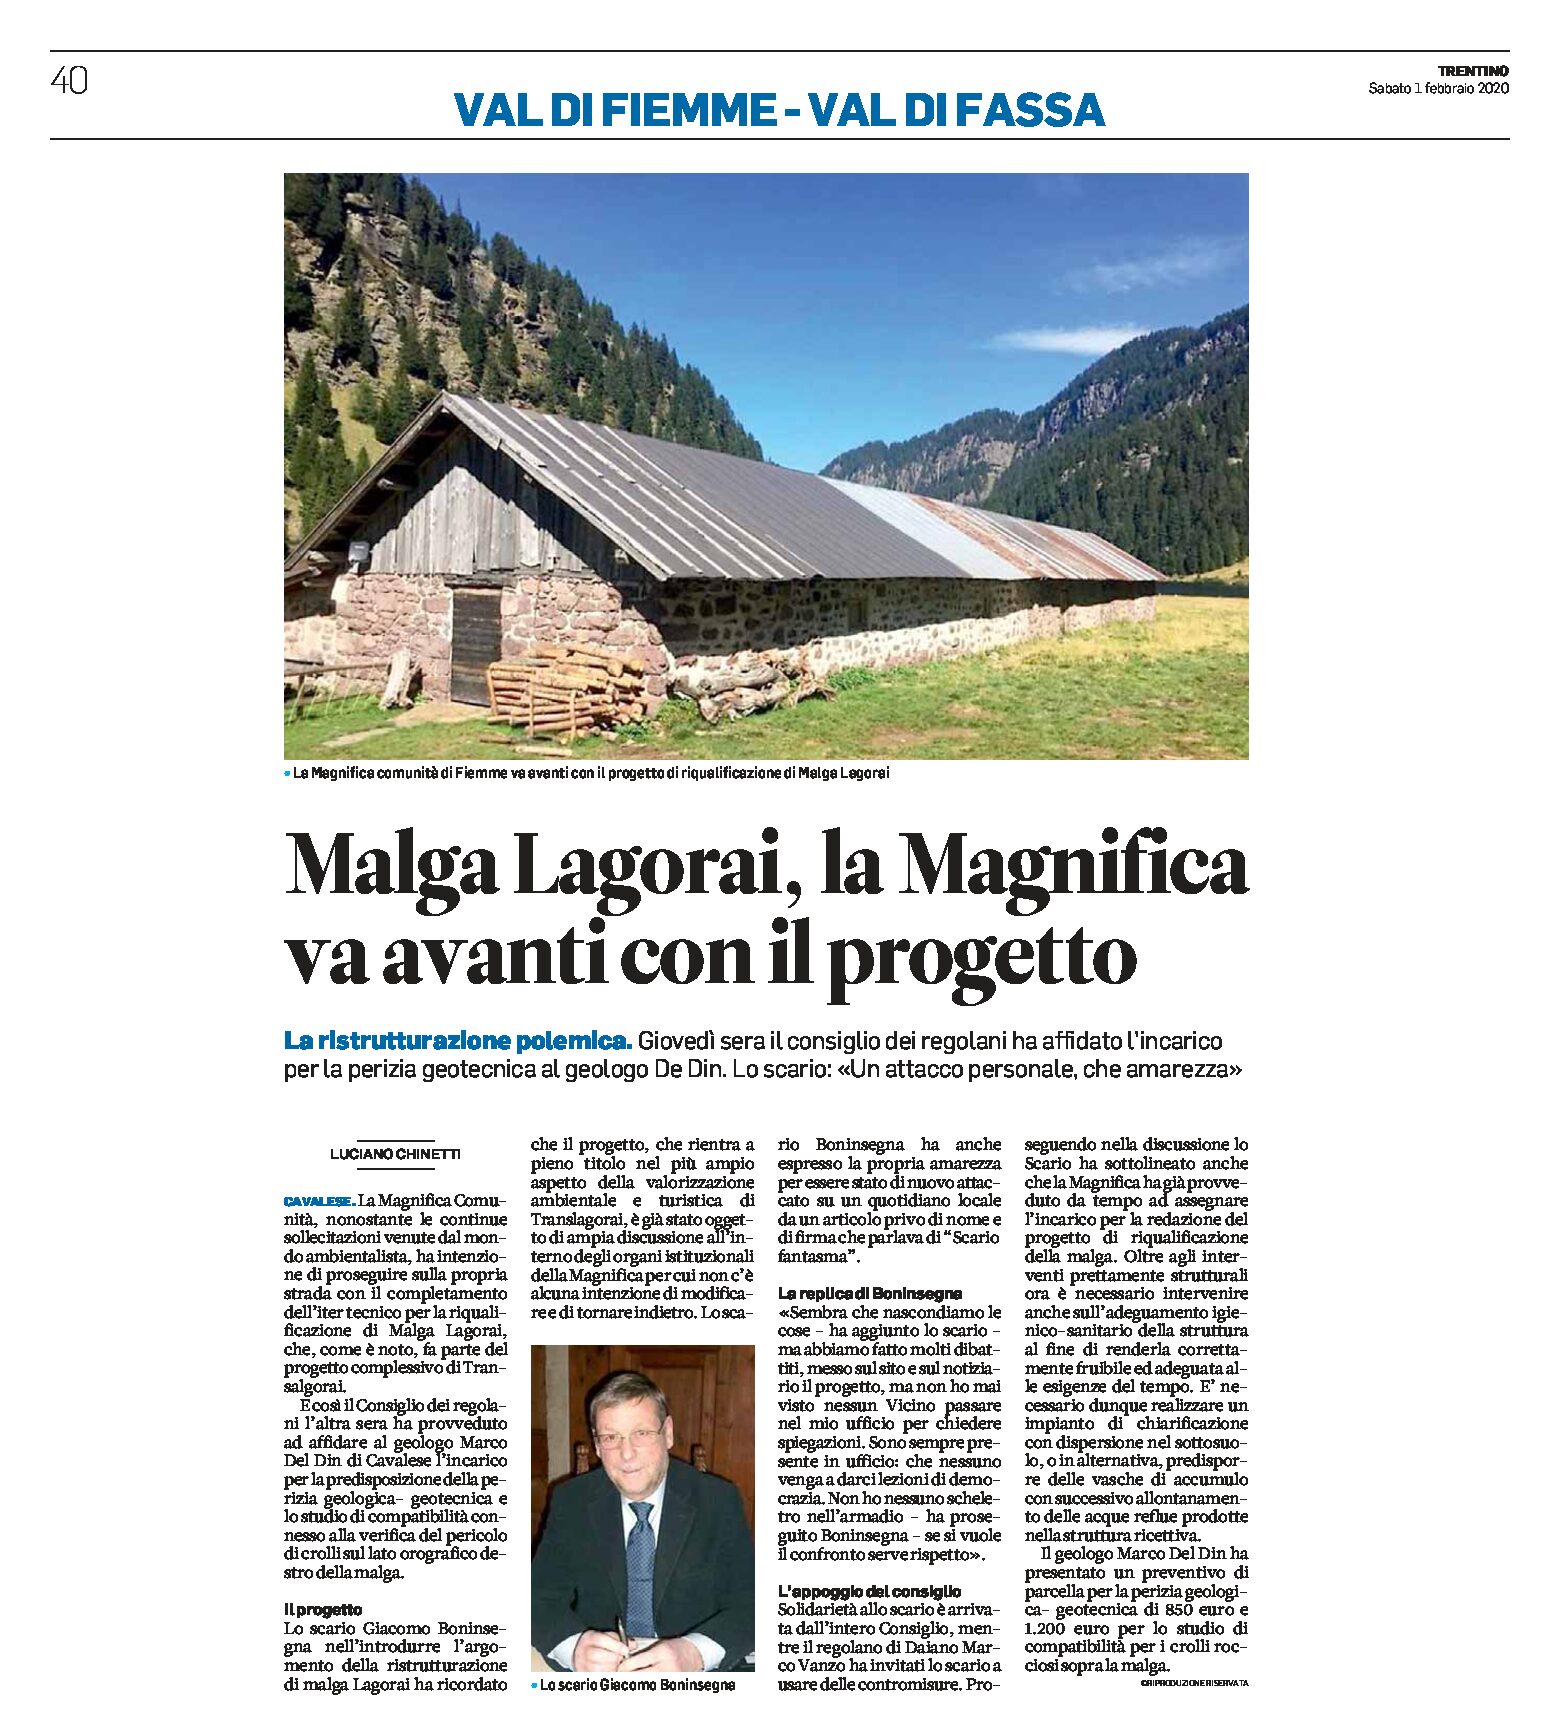 Malga Lagorai: la Magnifica va avanti con il progetto